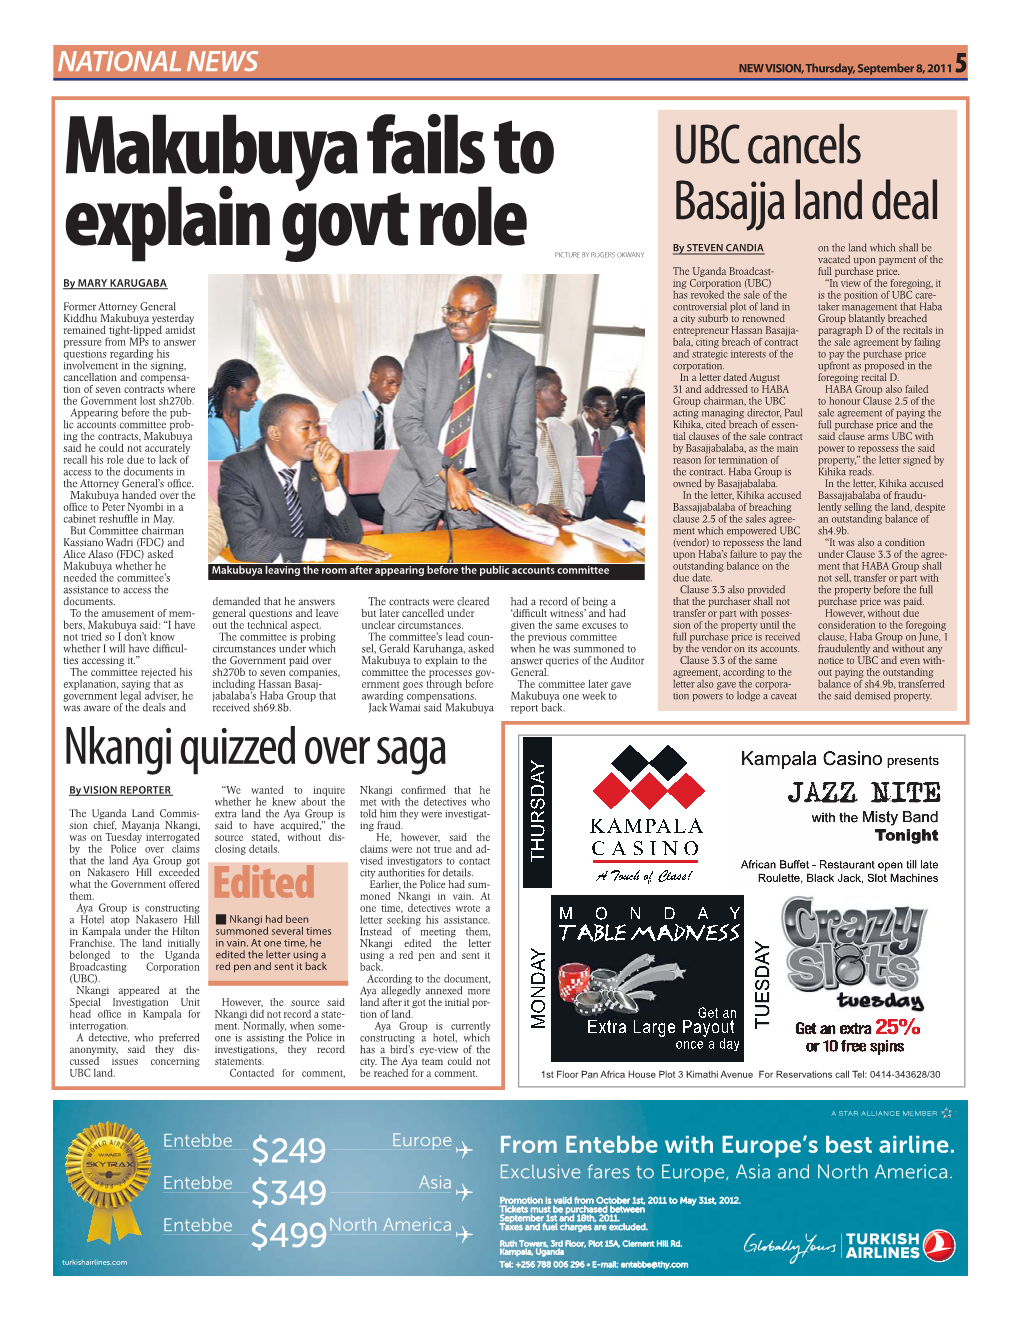 Makubuya Fails to Explain Govt Role